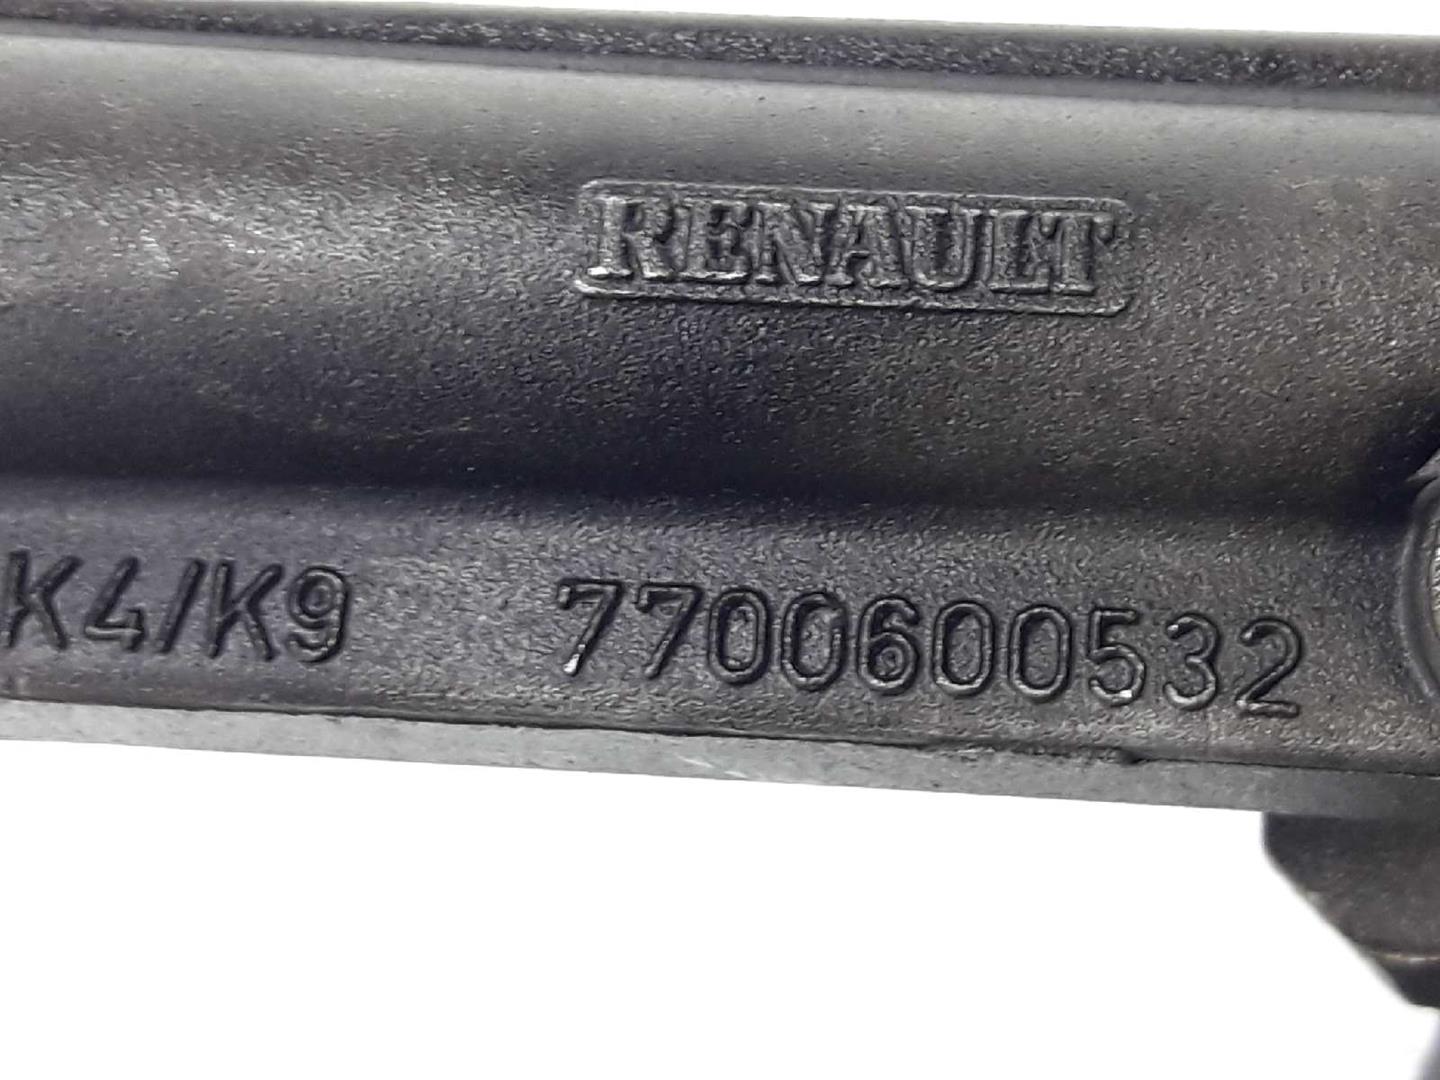 RENAULT Clio 2 generation (1998-2013) Oil Pump 7700600532, 150109834R 19717652